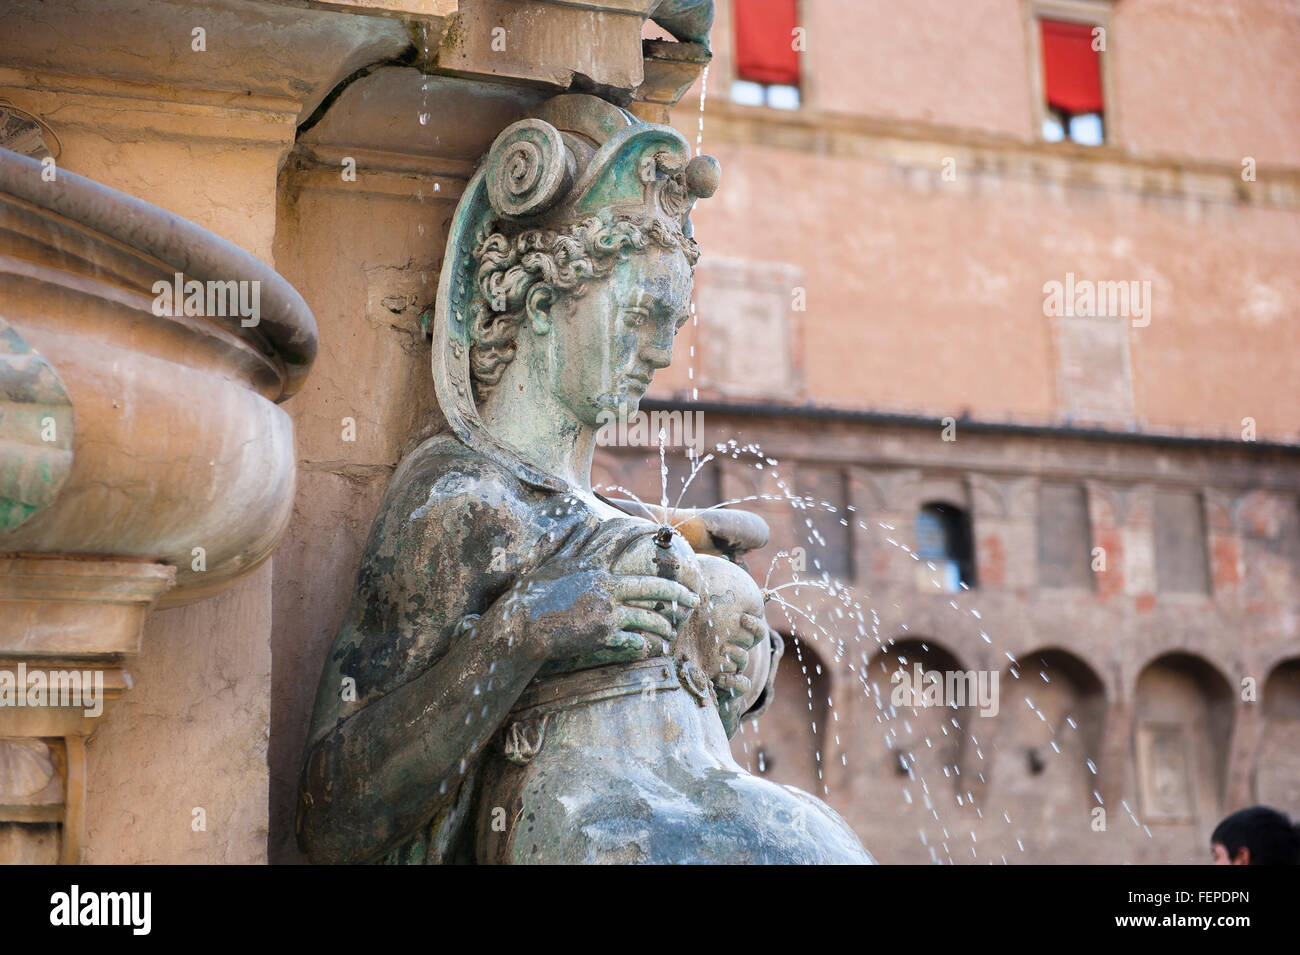 Bologna Neptune Fountain,bronze statue of a lactating nereid at the base of the Neptune Fountain (Fontana del Nettuno) in the Piazza Nettuno, Bologna. Stock Photo